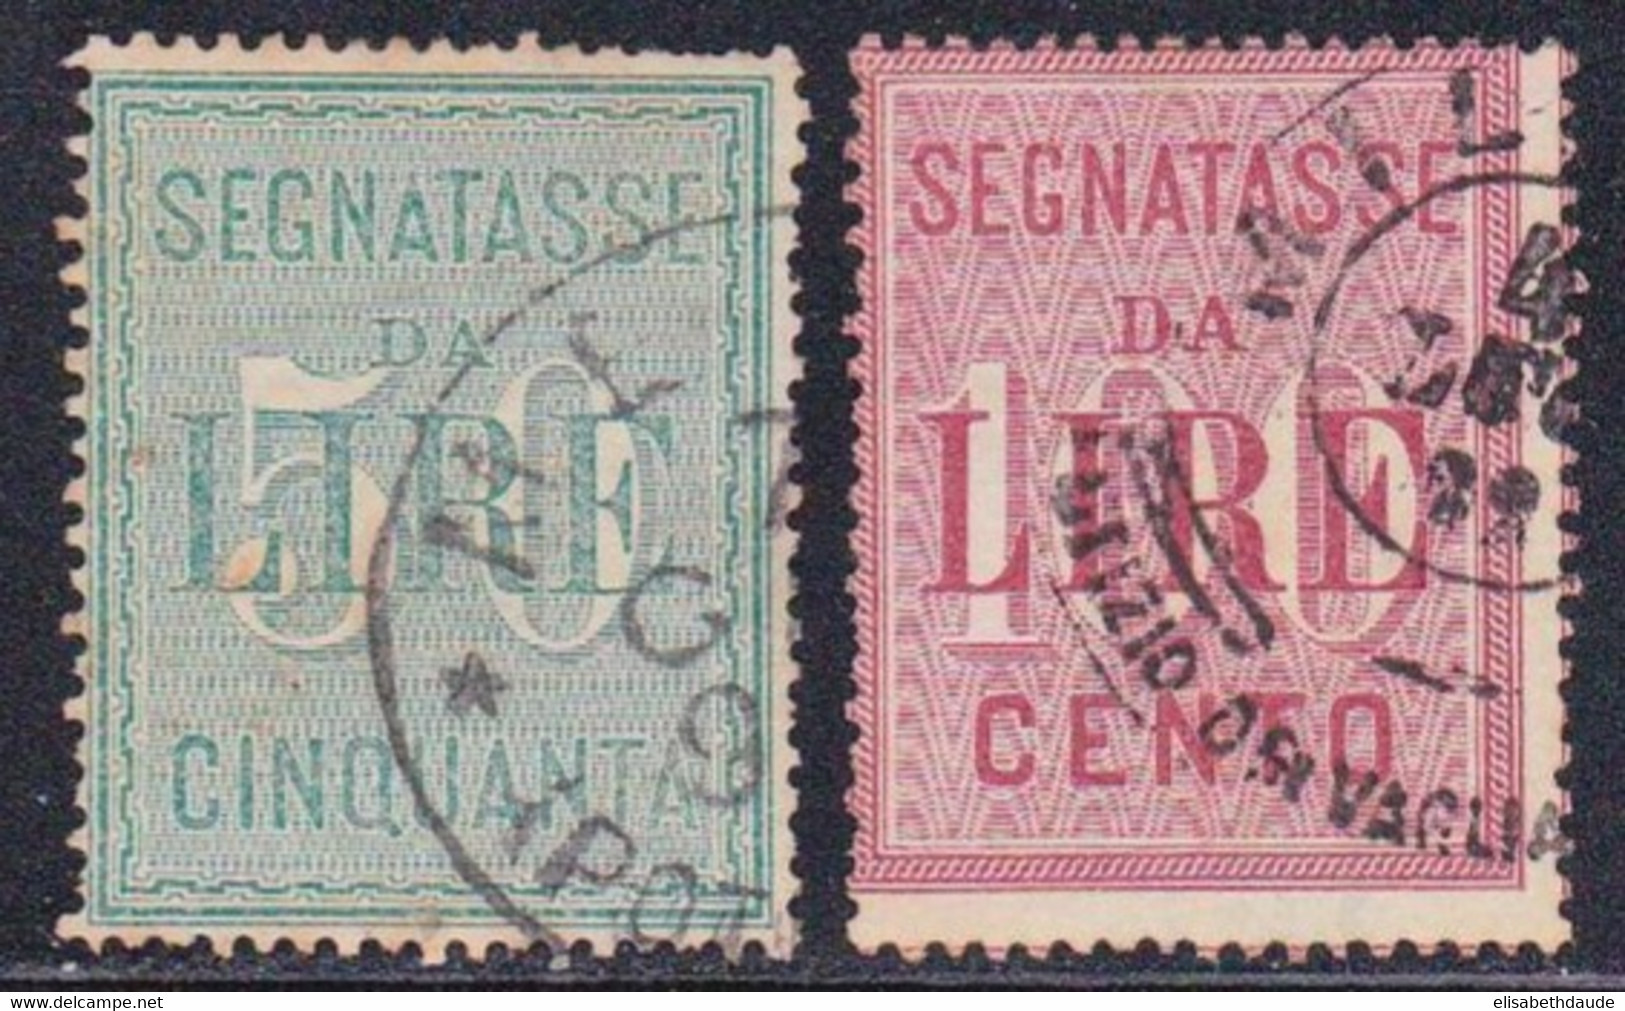 ITALIE - 1884 - YVERT N°20/21 OBLITERES - TAXE - COTE = 60 EUROS - Afgestempeld